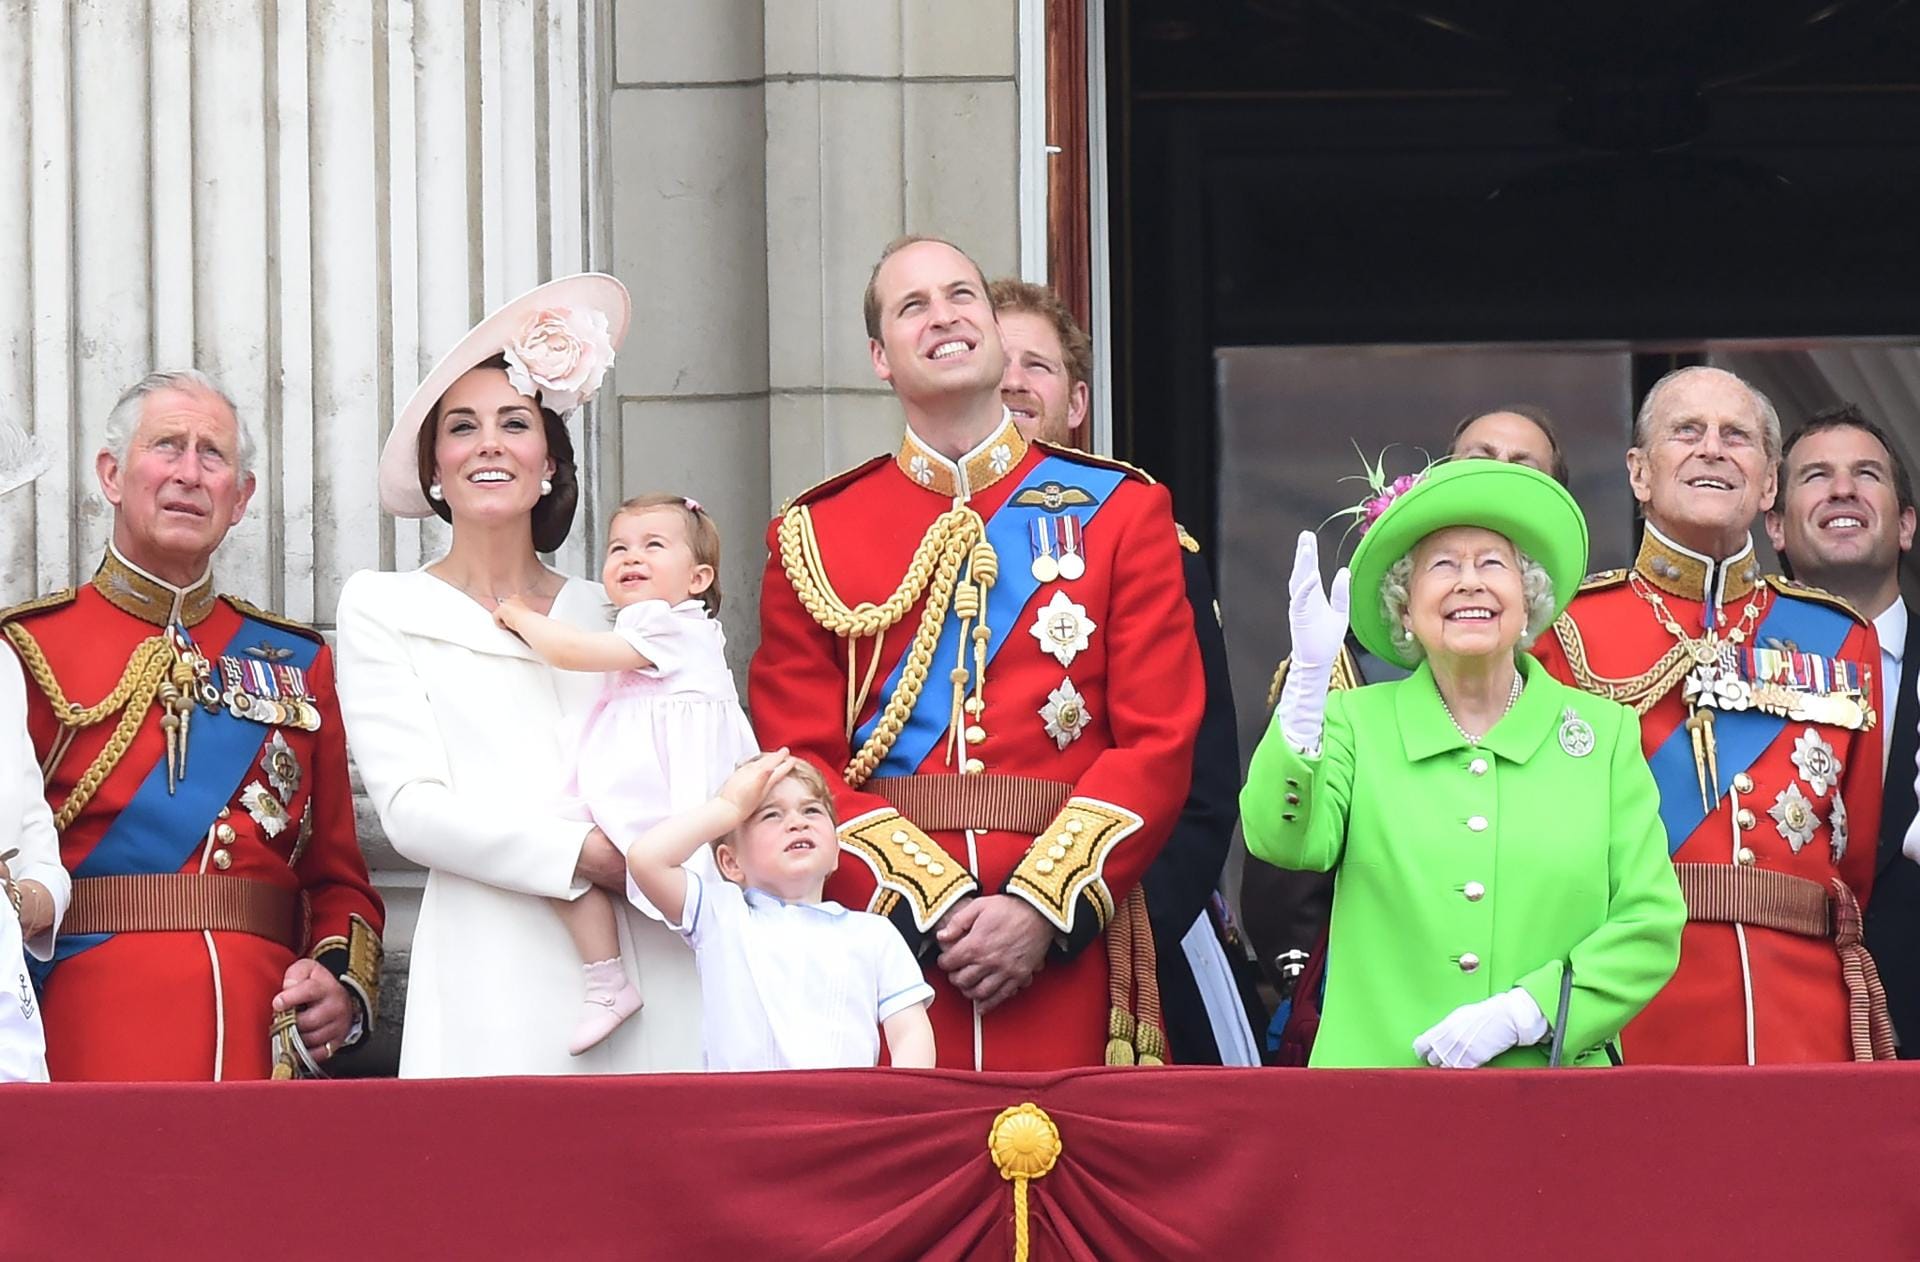 Prinz Charles, Herzogin Kate und Prinz William mit ihren Kindern Charlotte und George, Queen Elizabeth II. und Prinz Philip sowie im Hintergrund Prinz Harry beobachten die Militärjets der Royal Air Force, die über London hinweg donnerten und die Landesfarben blau-weiß-rot in den Himmel malten.